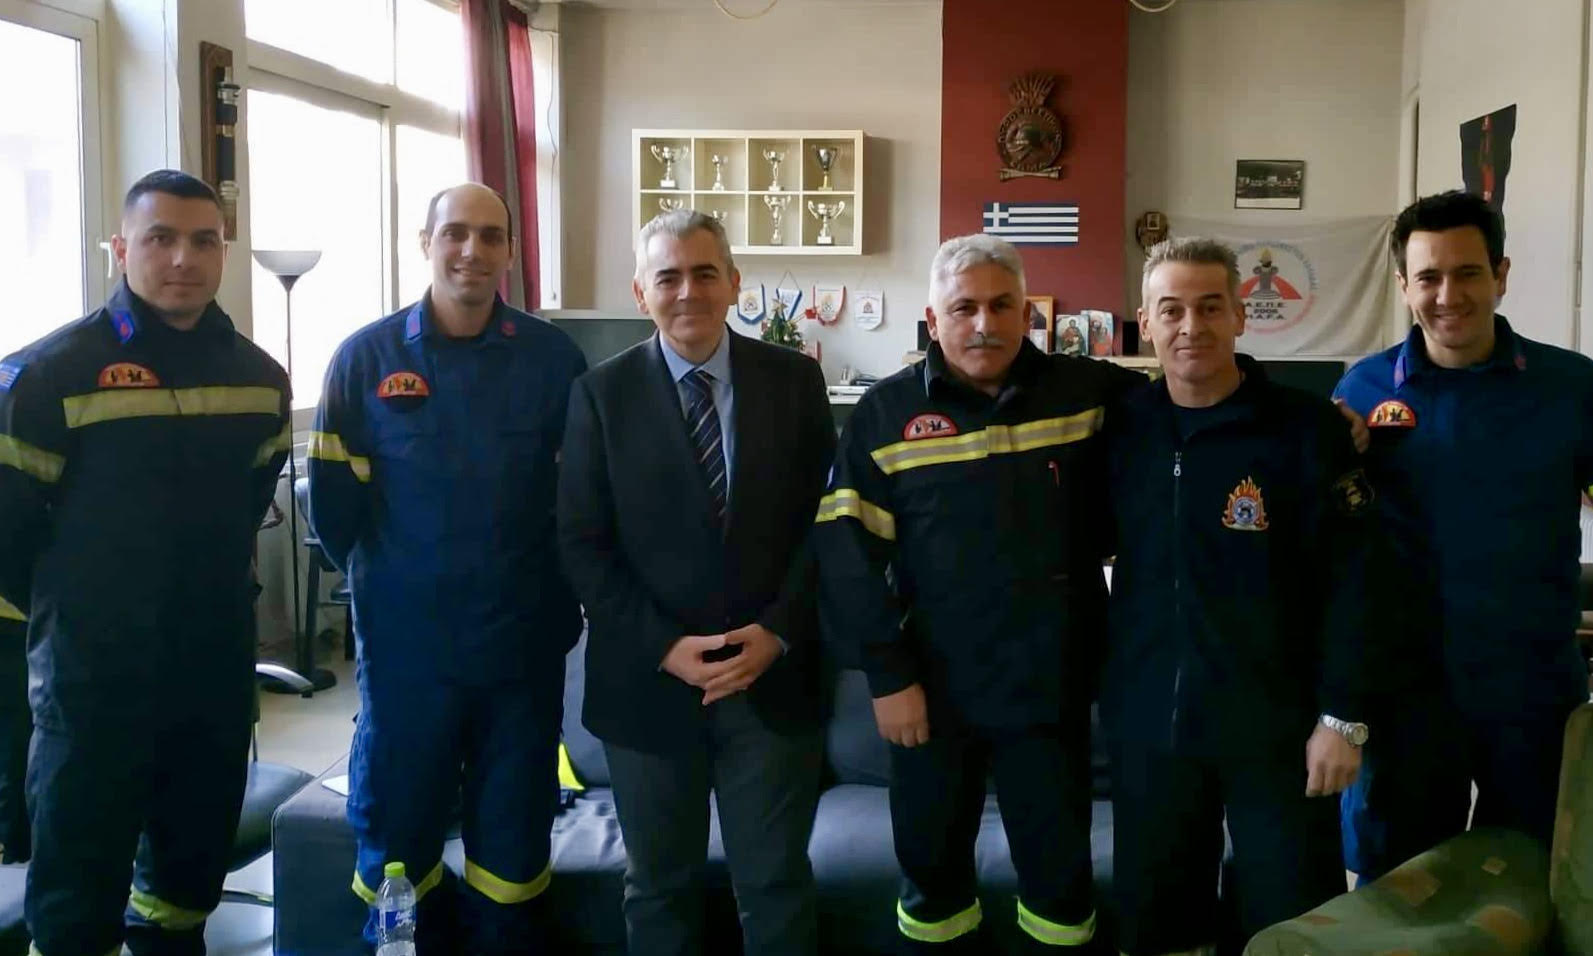 Χαρακόπουλος: Οι πυροσβέστες διαθέτουν υψηλό φρόνημα και επαγγελματισμό!